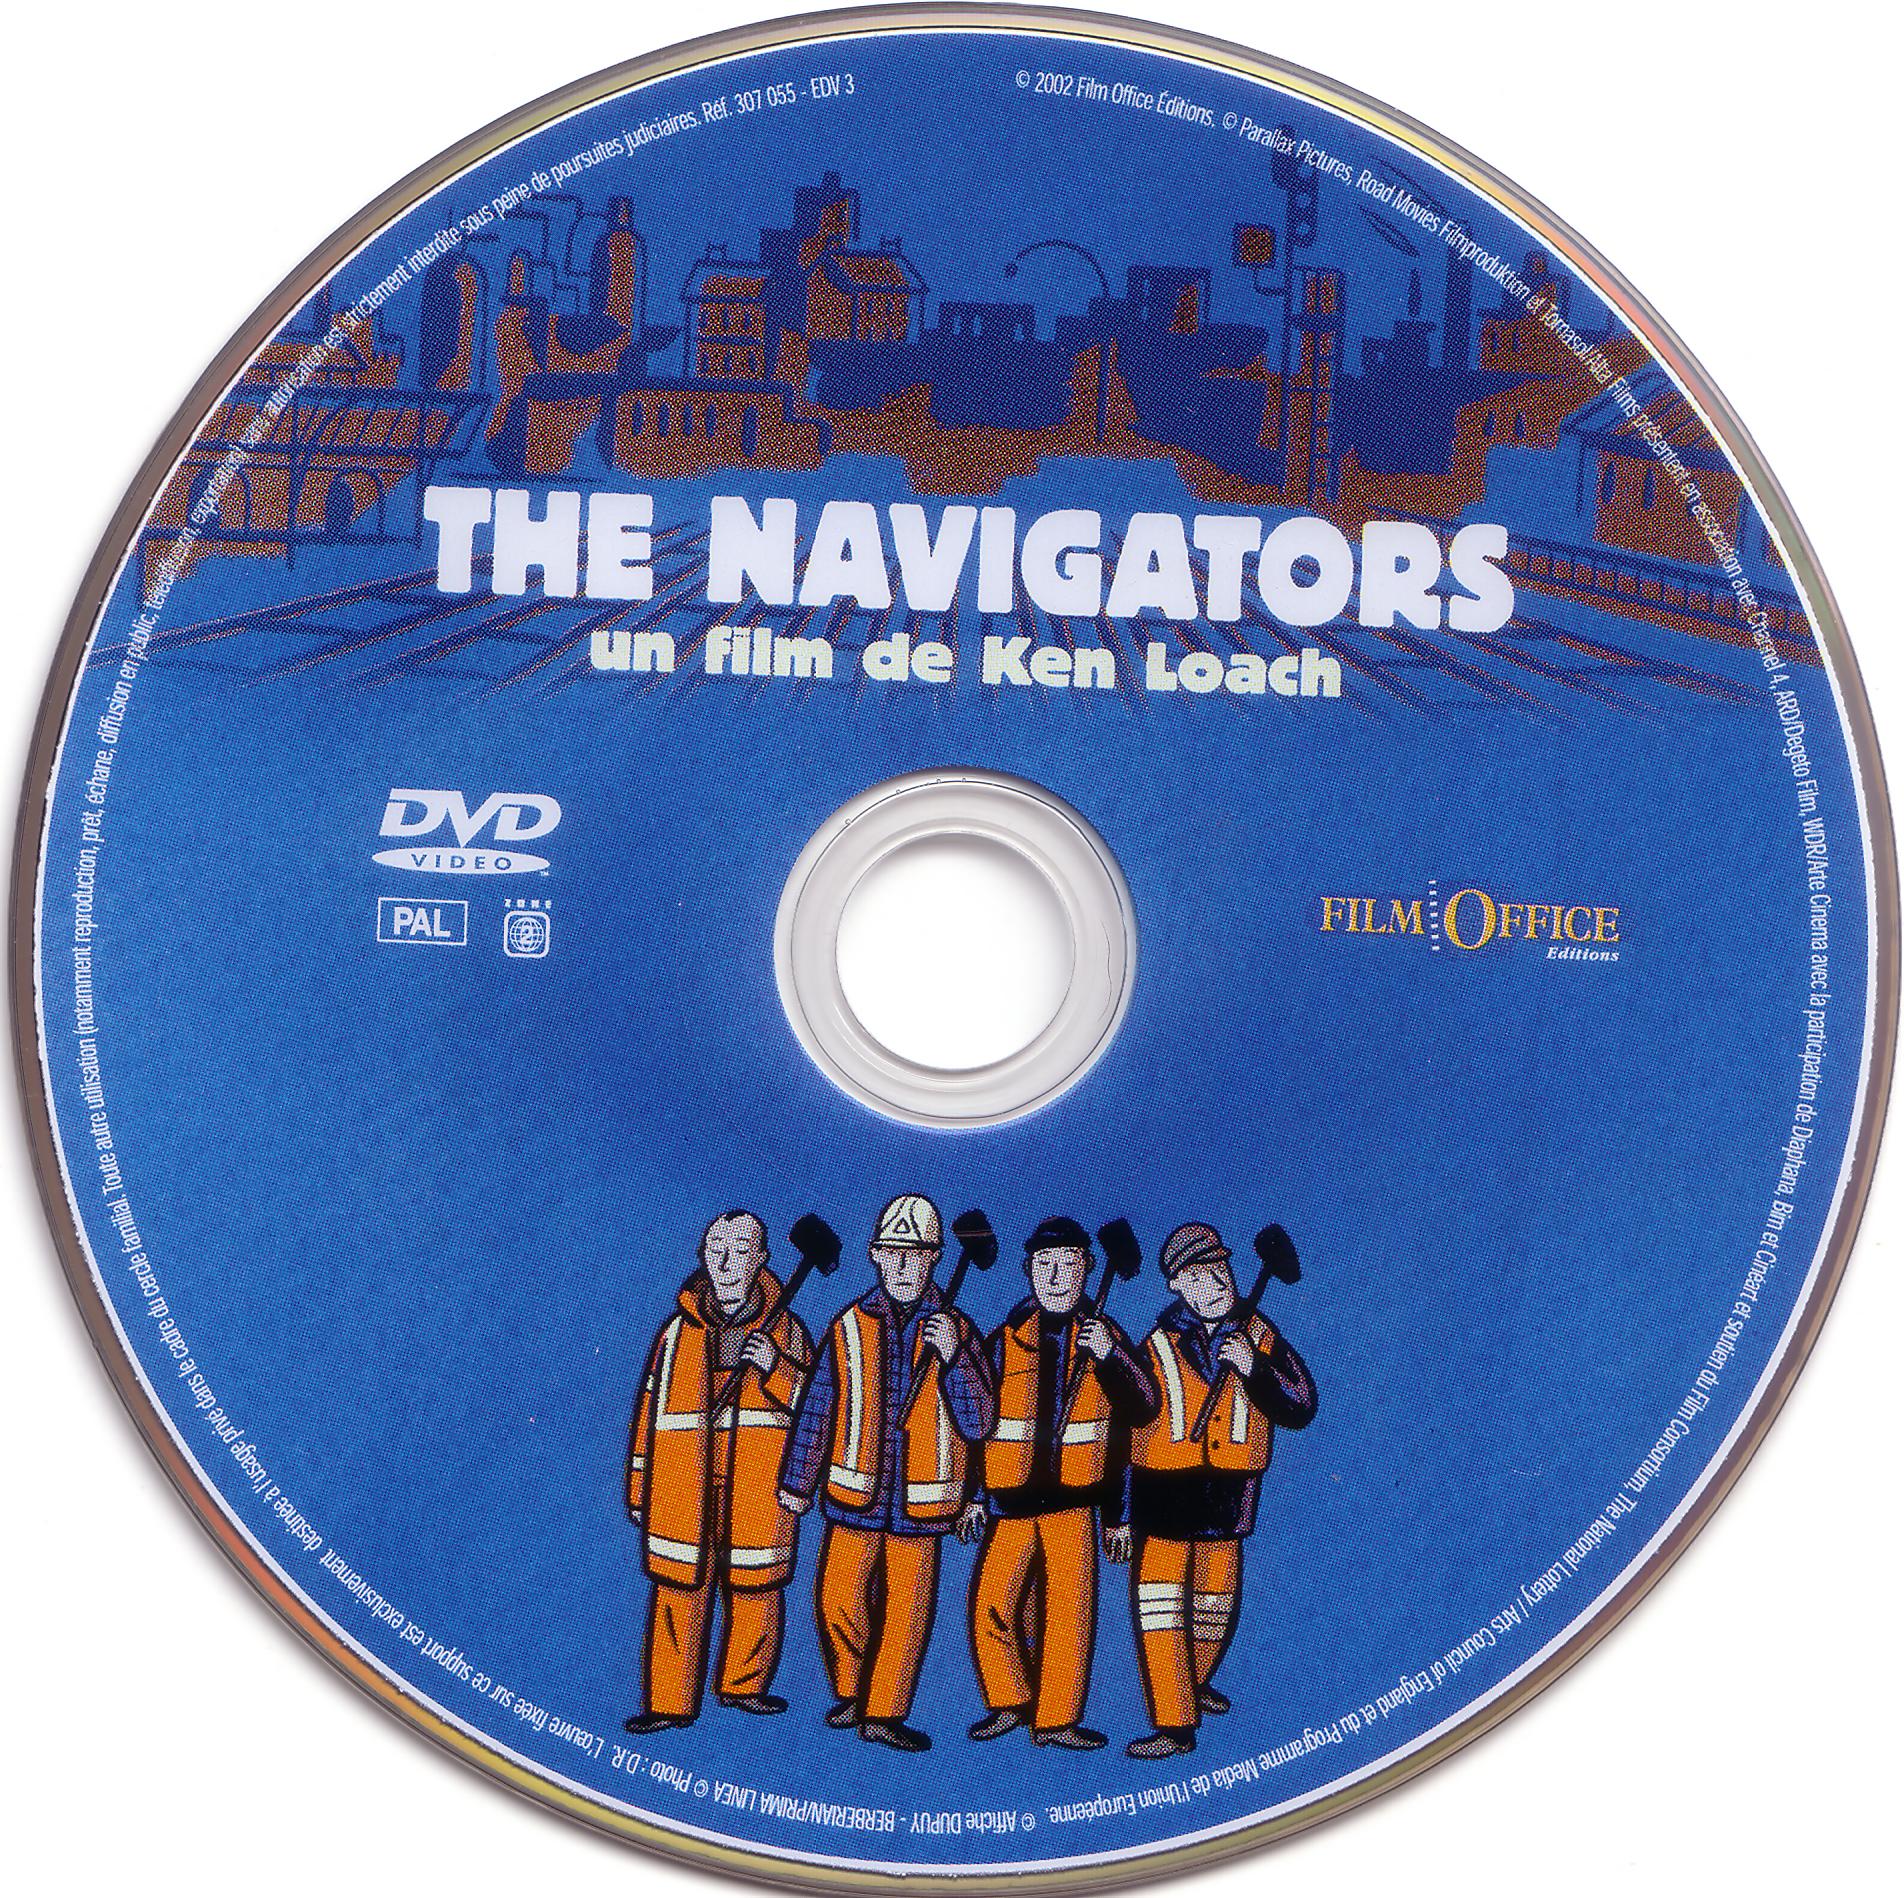 The navigators